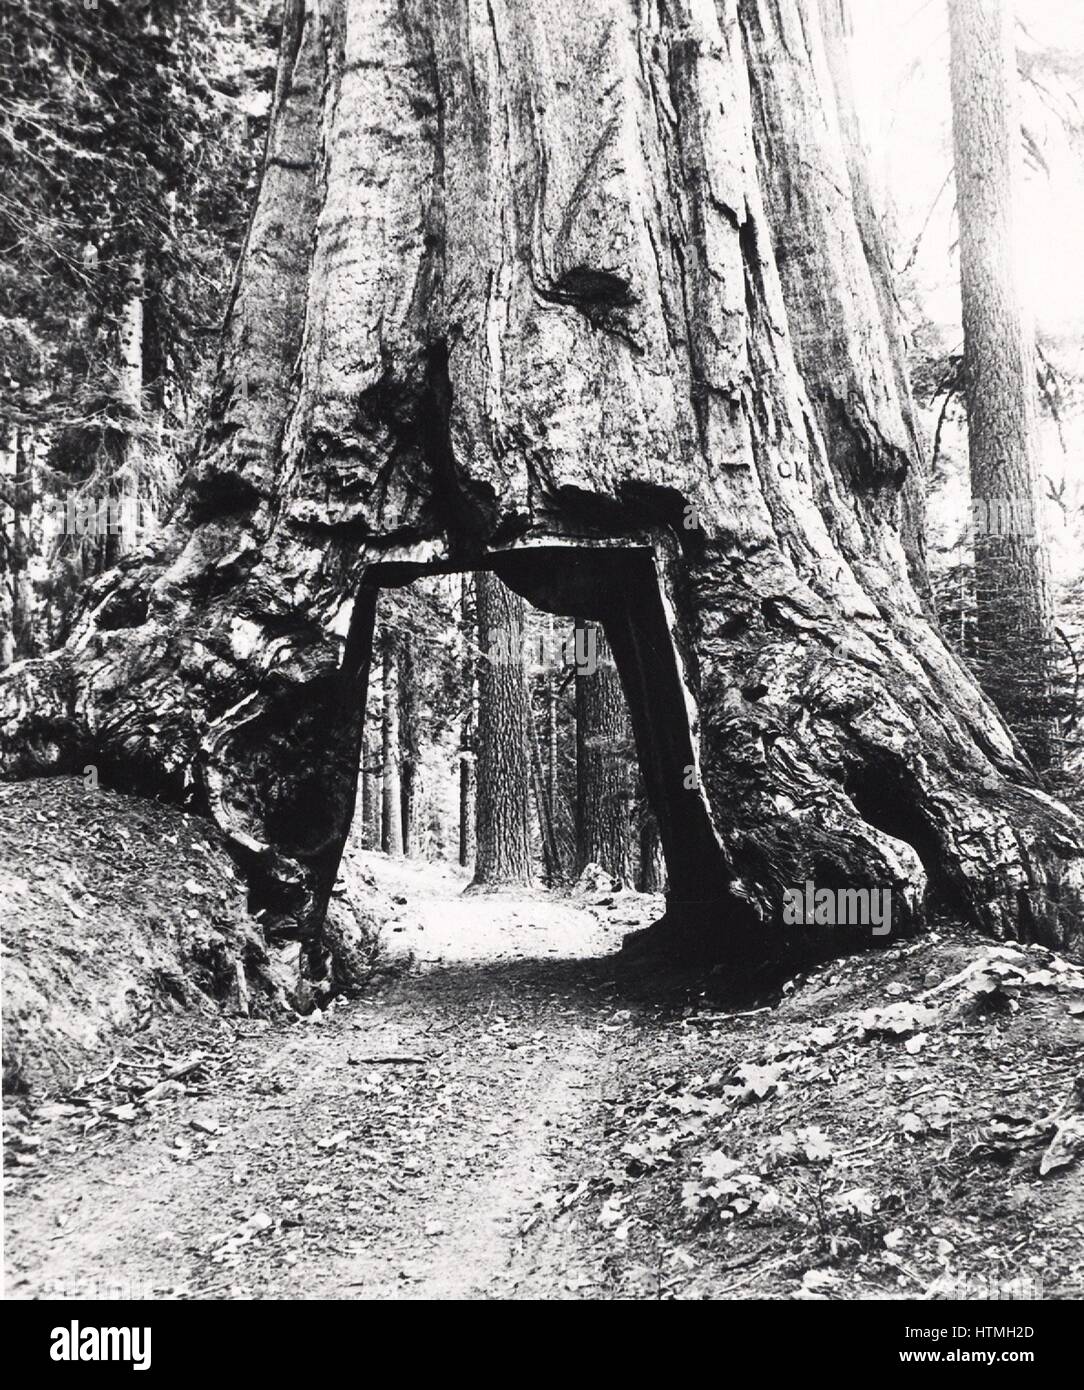 Angetrieben durch den Baumstamm von einem kalifornischen Redwood-Baum Straße erhielt den Namen Wawona. Baum Bolus Durchmesser 8,53 m (28 ft) und Höhe von 144,78 m (275 ft). Foto c1893. Stockfoto